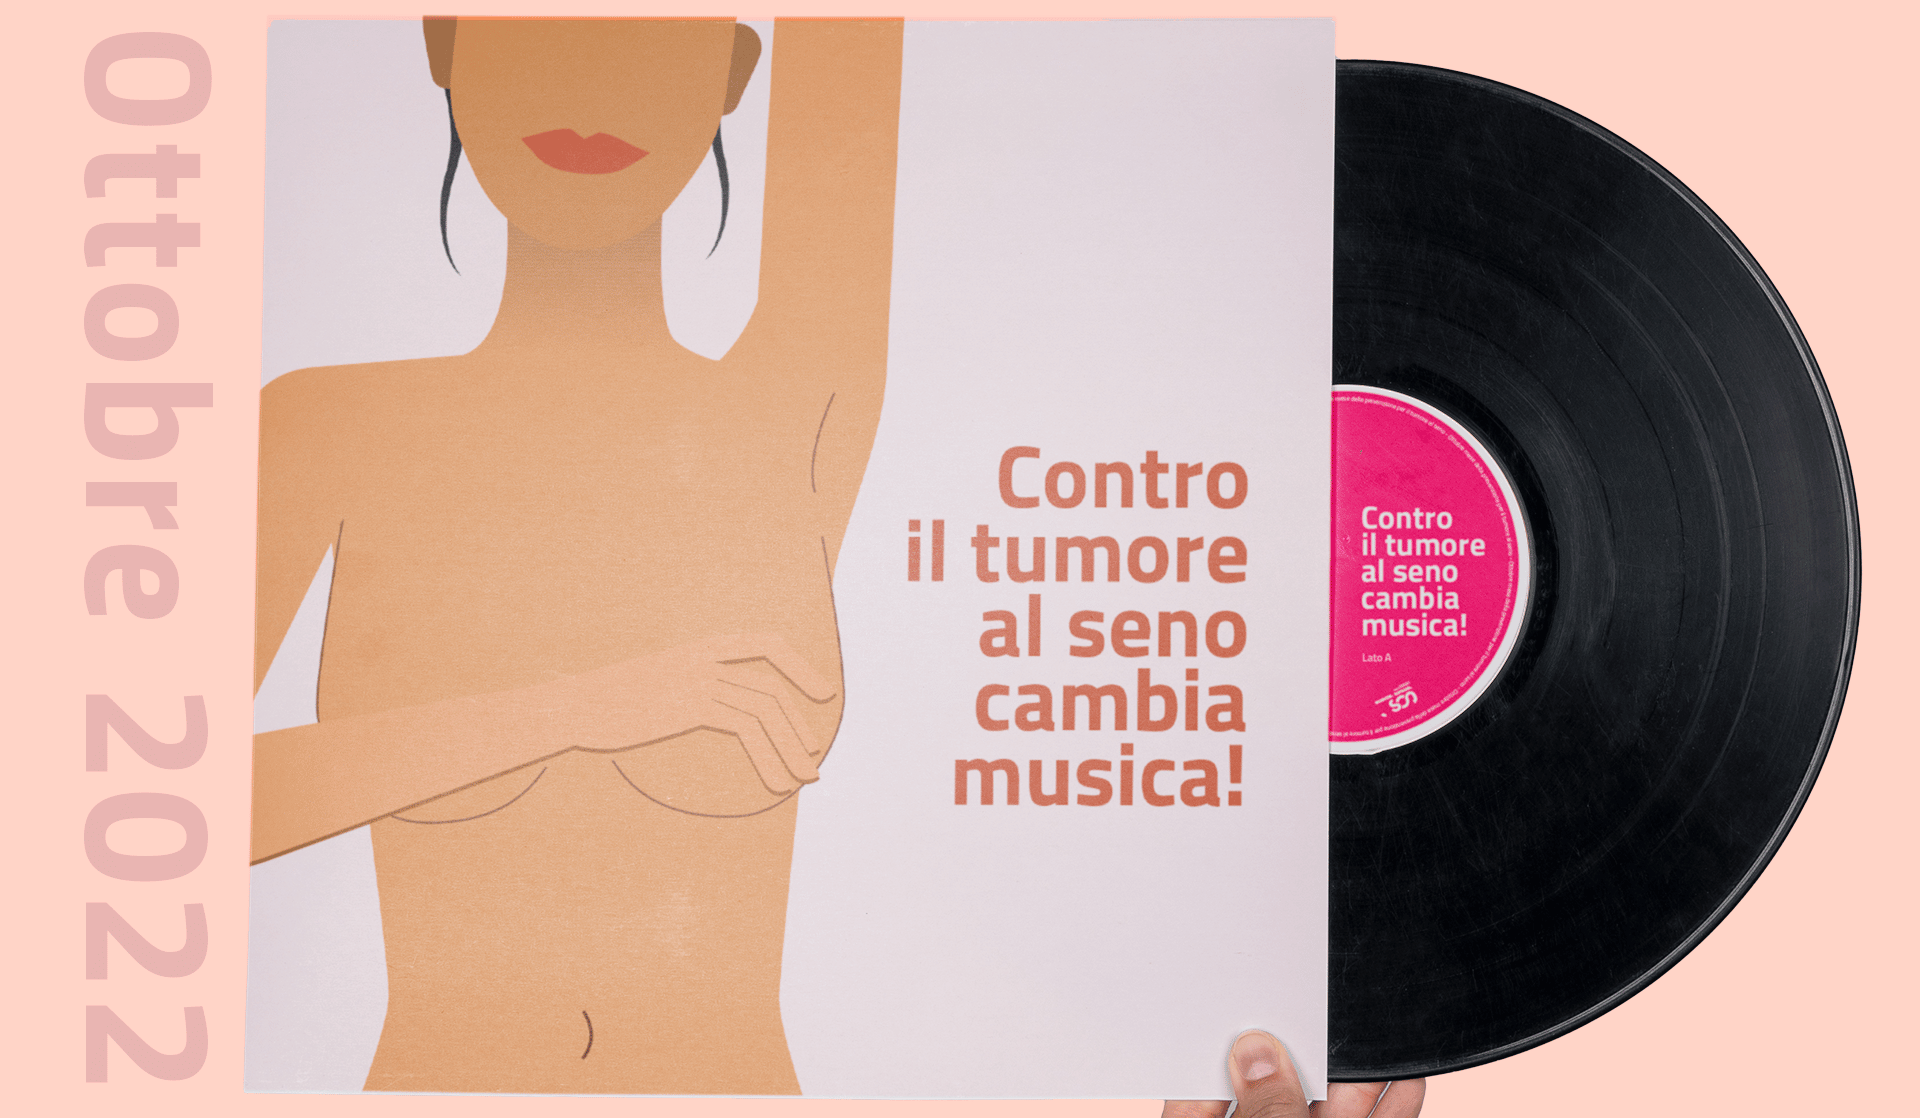 Prevenzione tumore al seno, nei mercoledì di ottobre consulenze gratuite al Policlinico di Catania